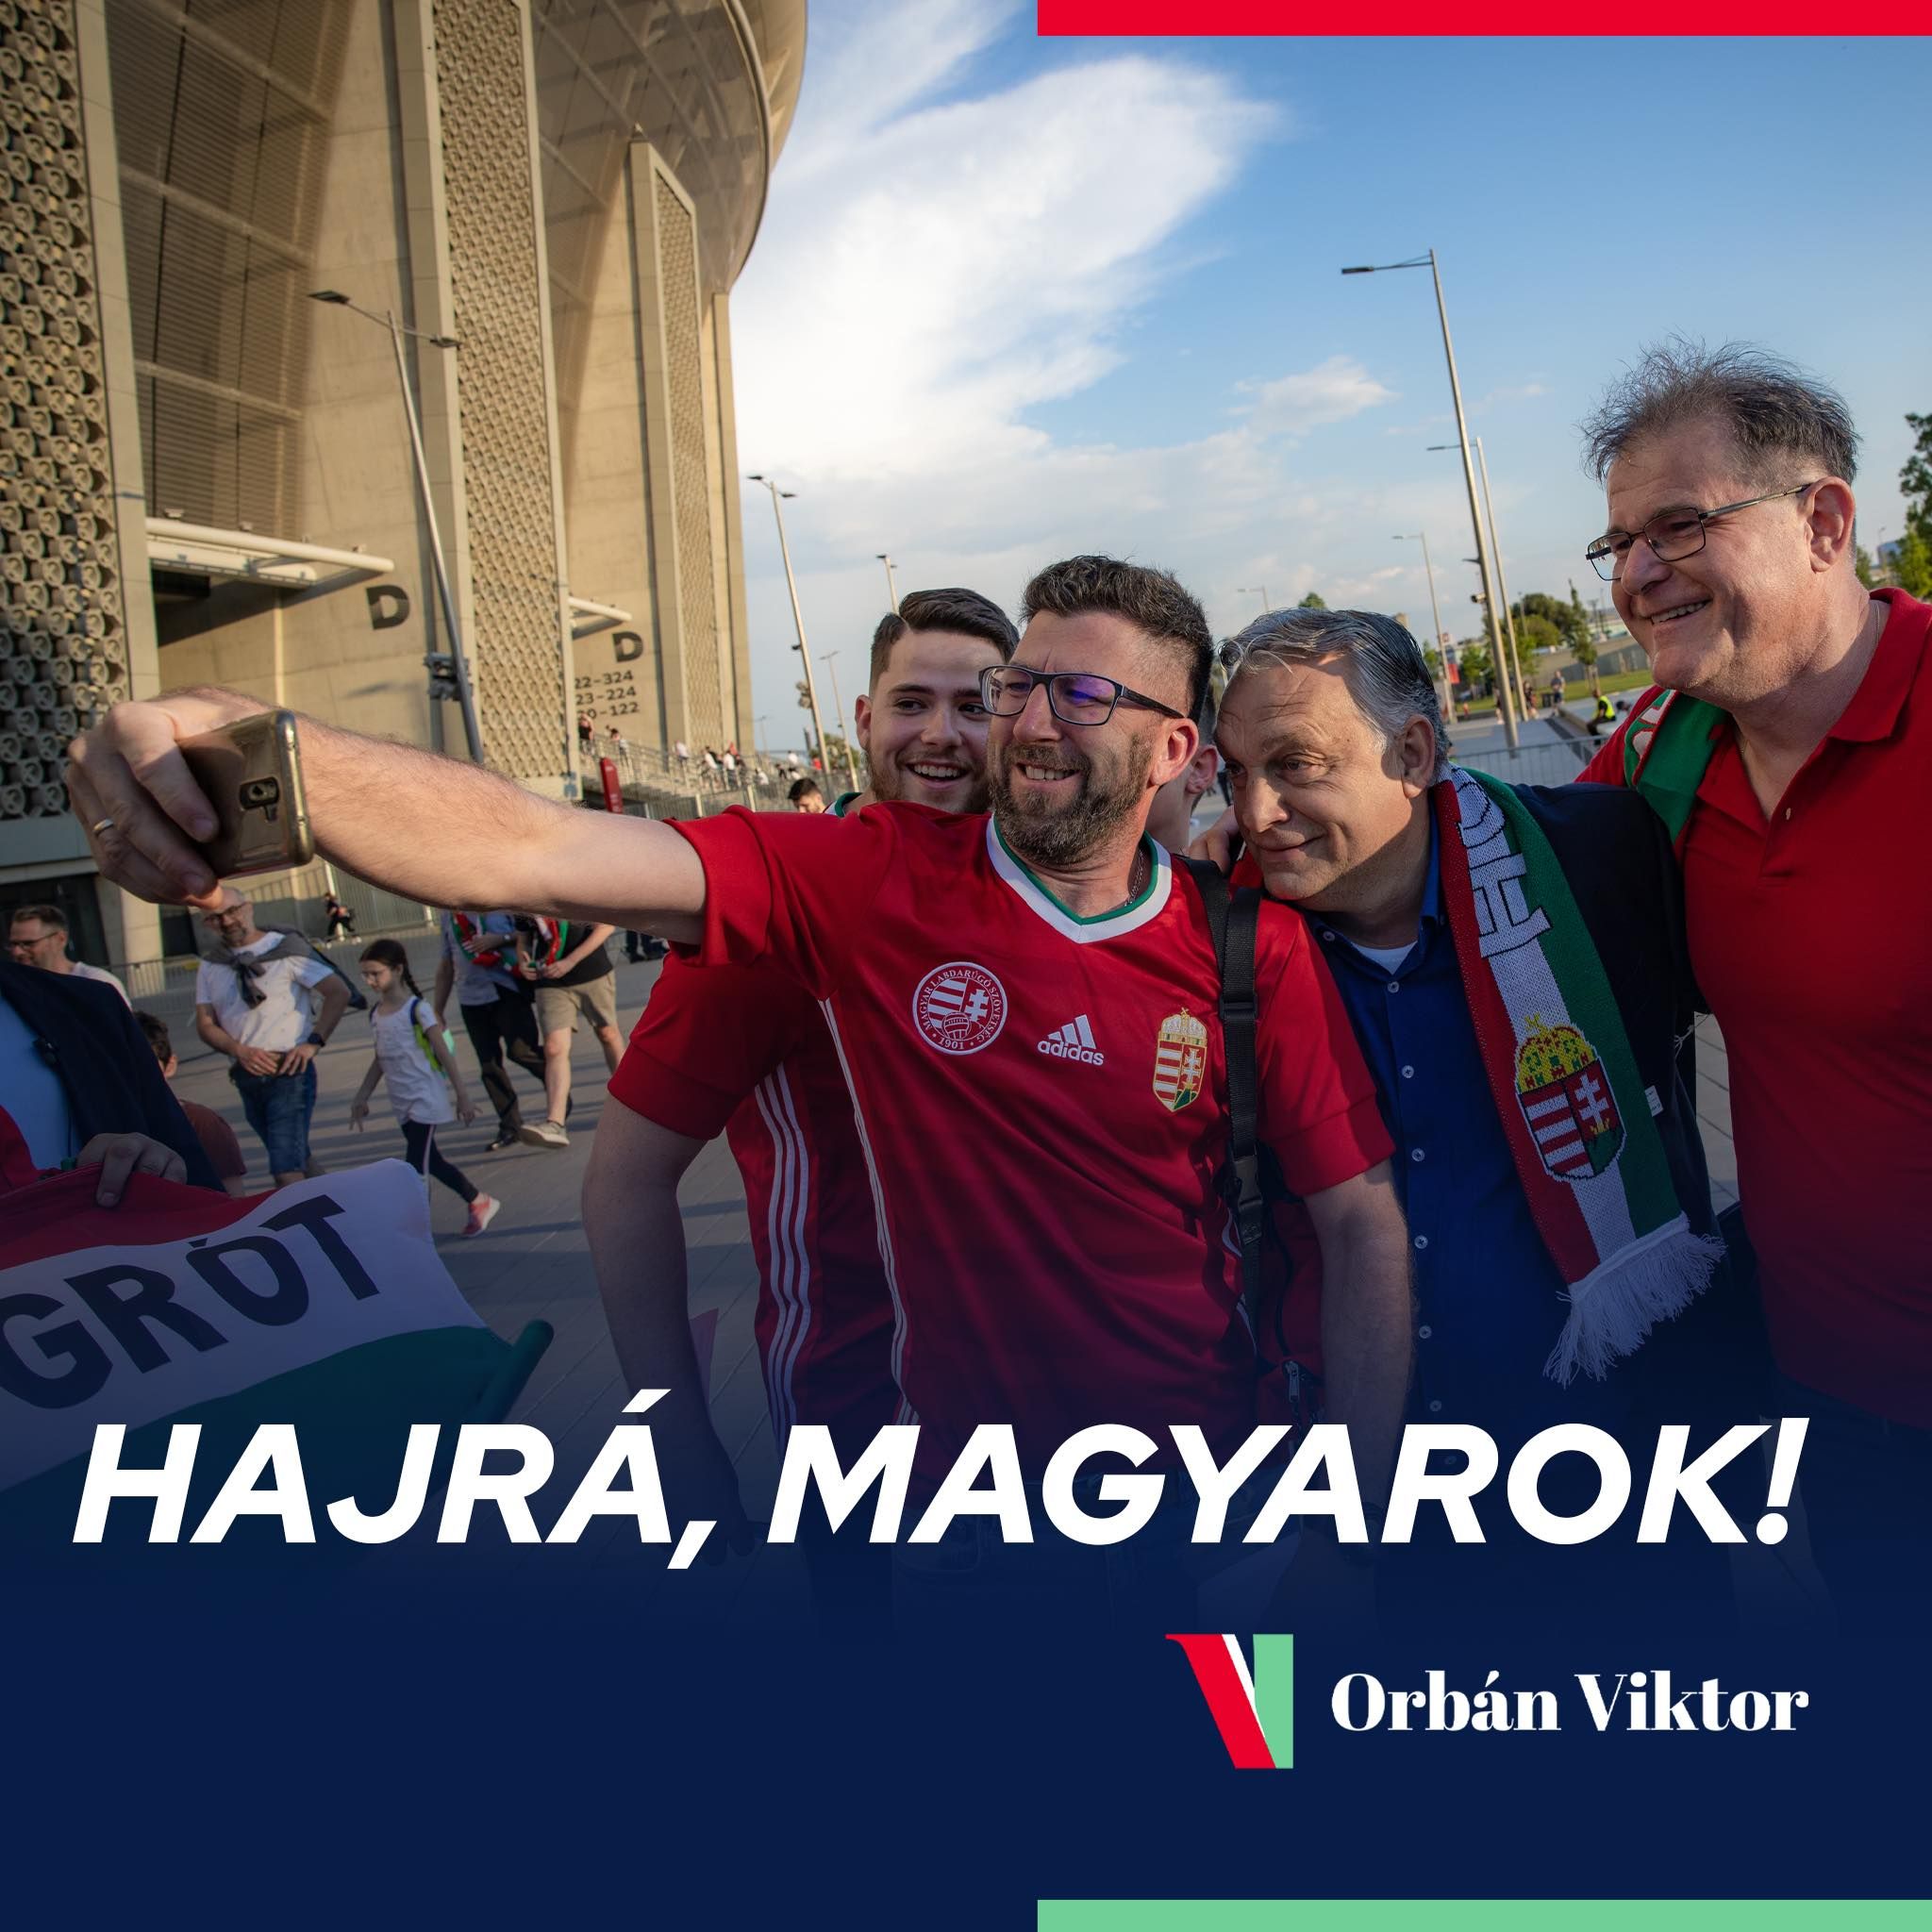 Orbán Viktor fontos felhívást tett közzé a magyar-német meccs előtt